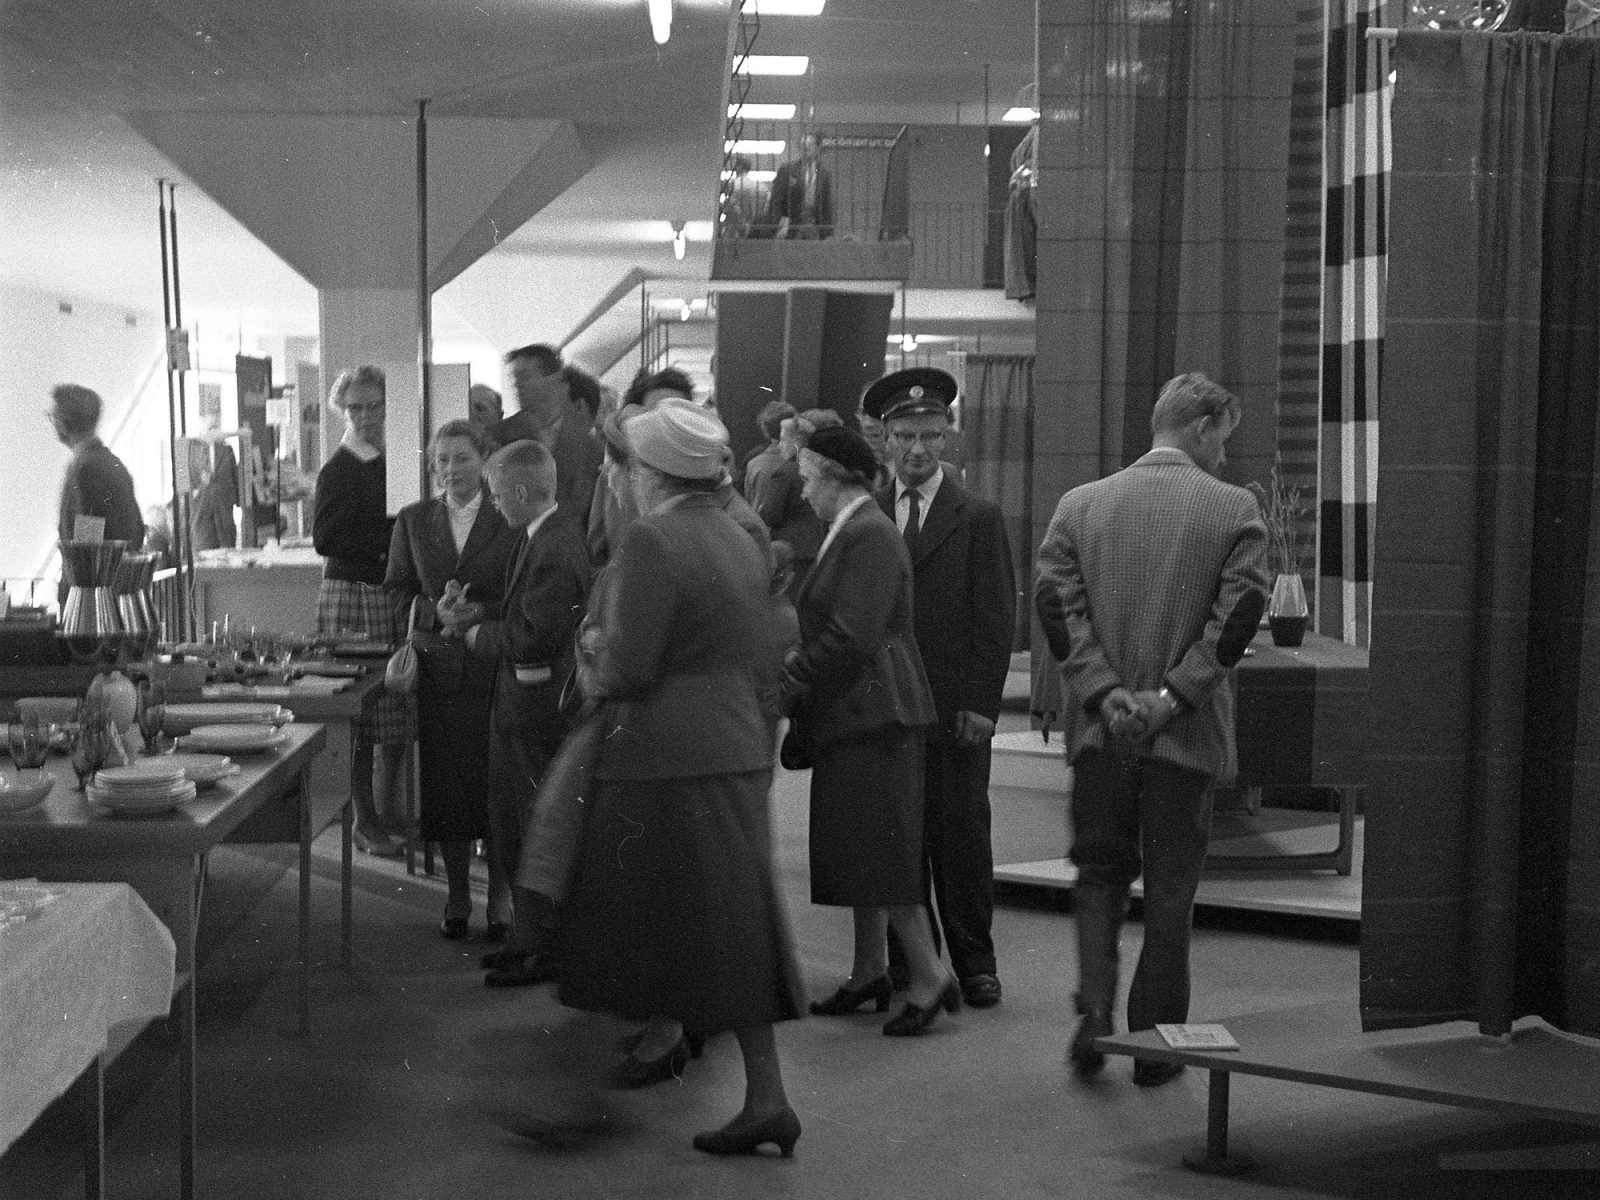 Människor minglar och tittar på utställda möbler, kvinnorna i 1950-talsklänningar eller dräkter, männen i kostym.